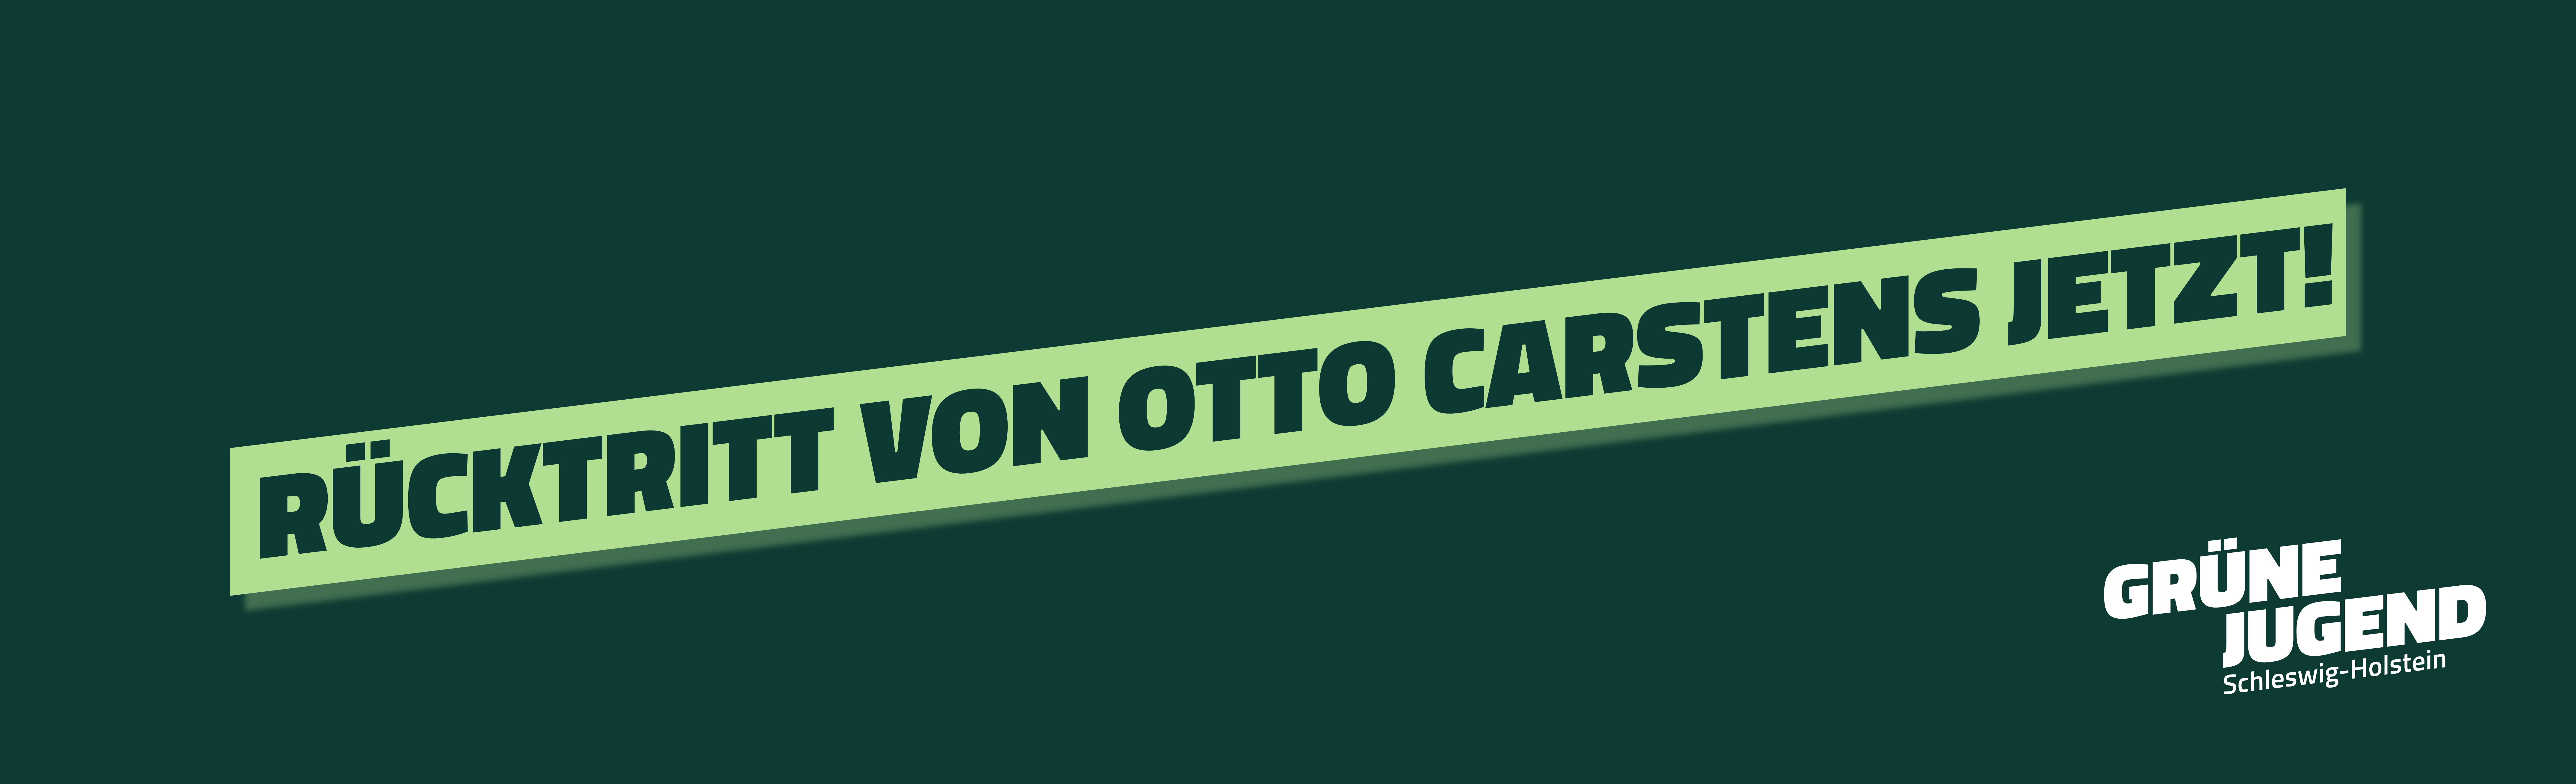 Rücktritt von Otto Carstens jetzt!